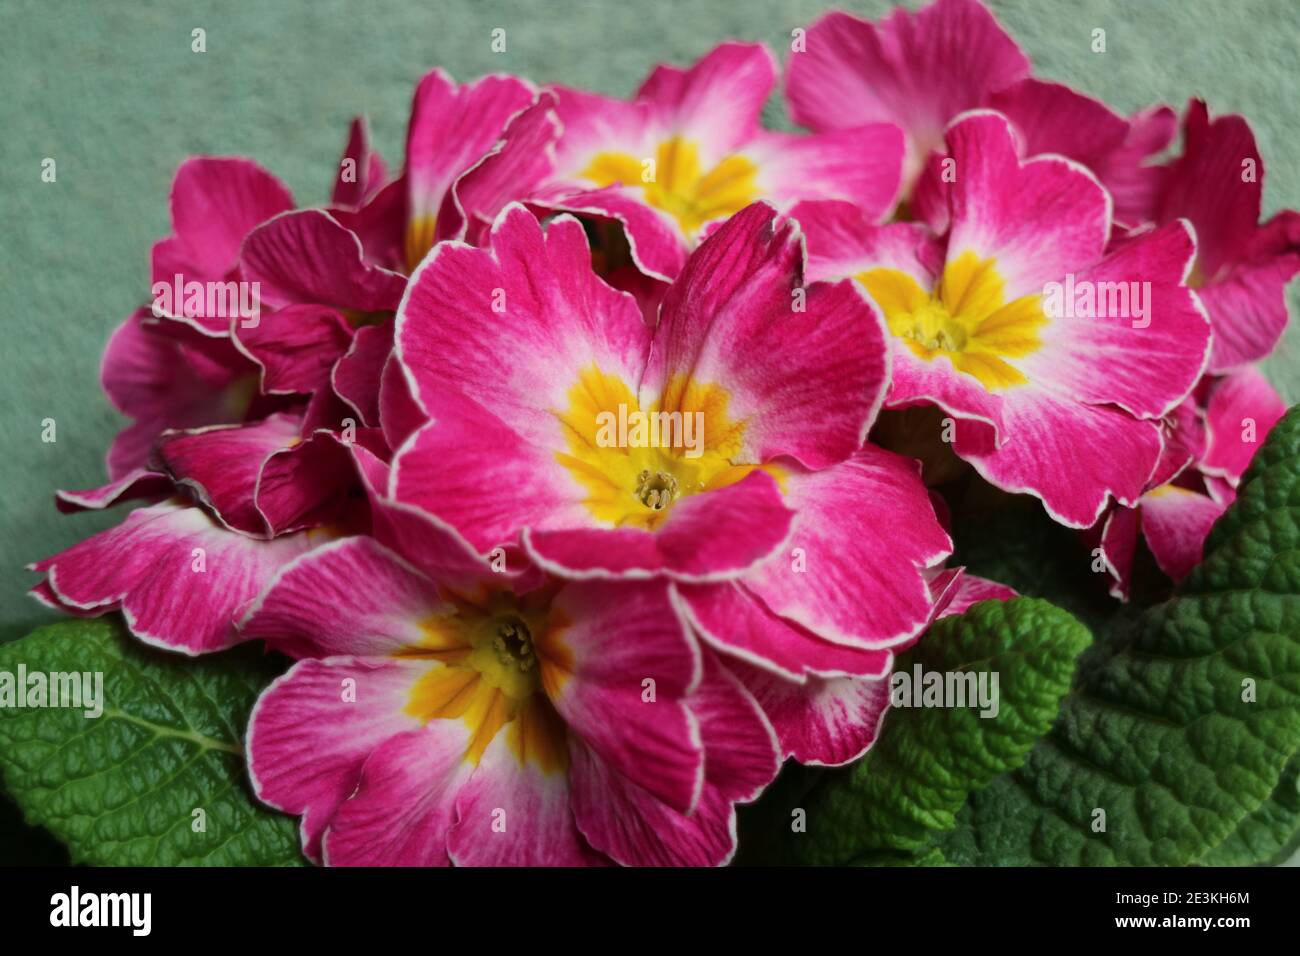 Primula rose avec des étamines jaunes et des feuilles vertes, Pink primula macro, Beauté dans la nature, photo florale, photographie macro, photo de stock Banque D'Images